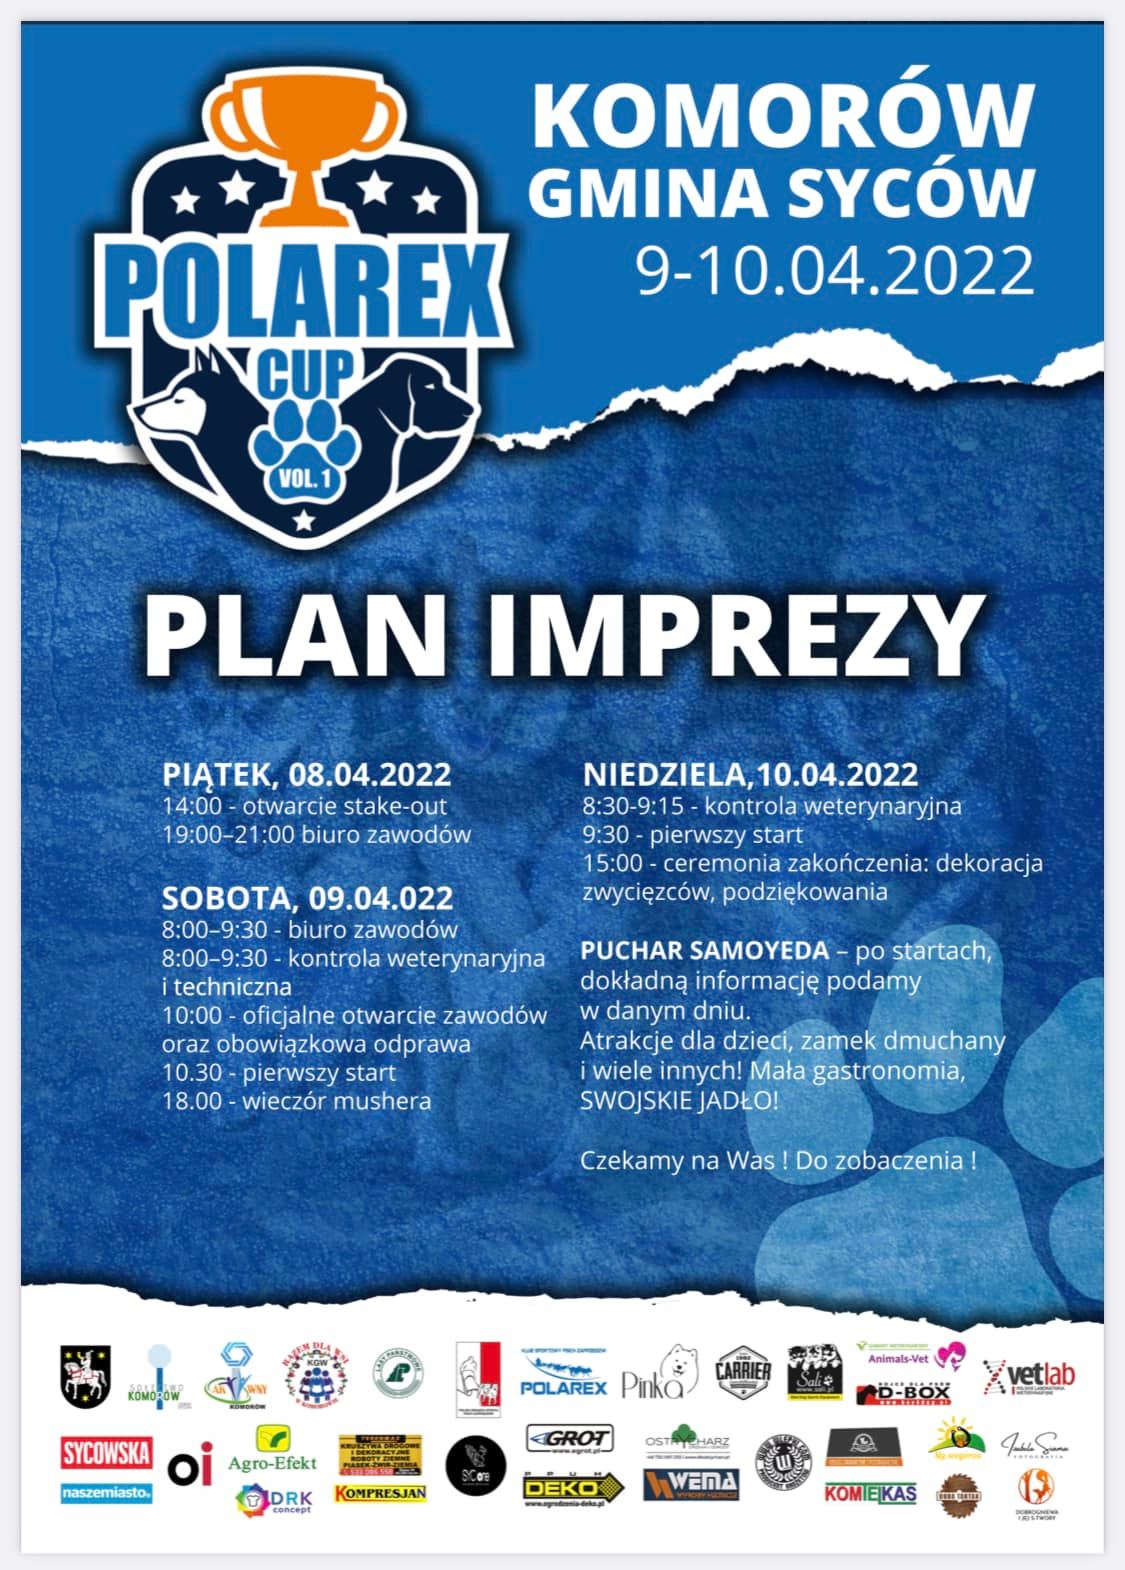 Polarex vol.1